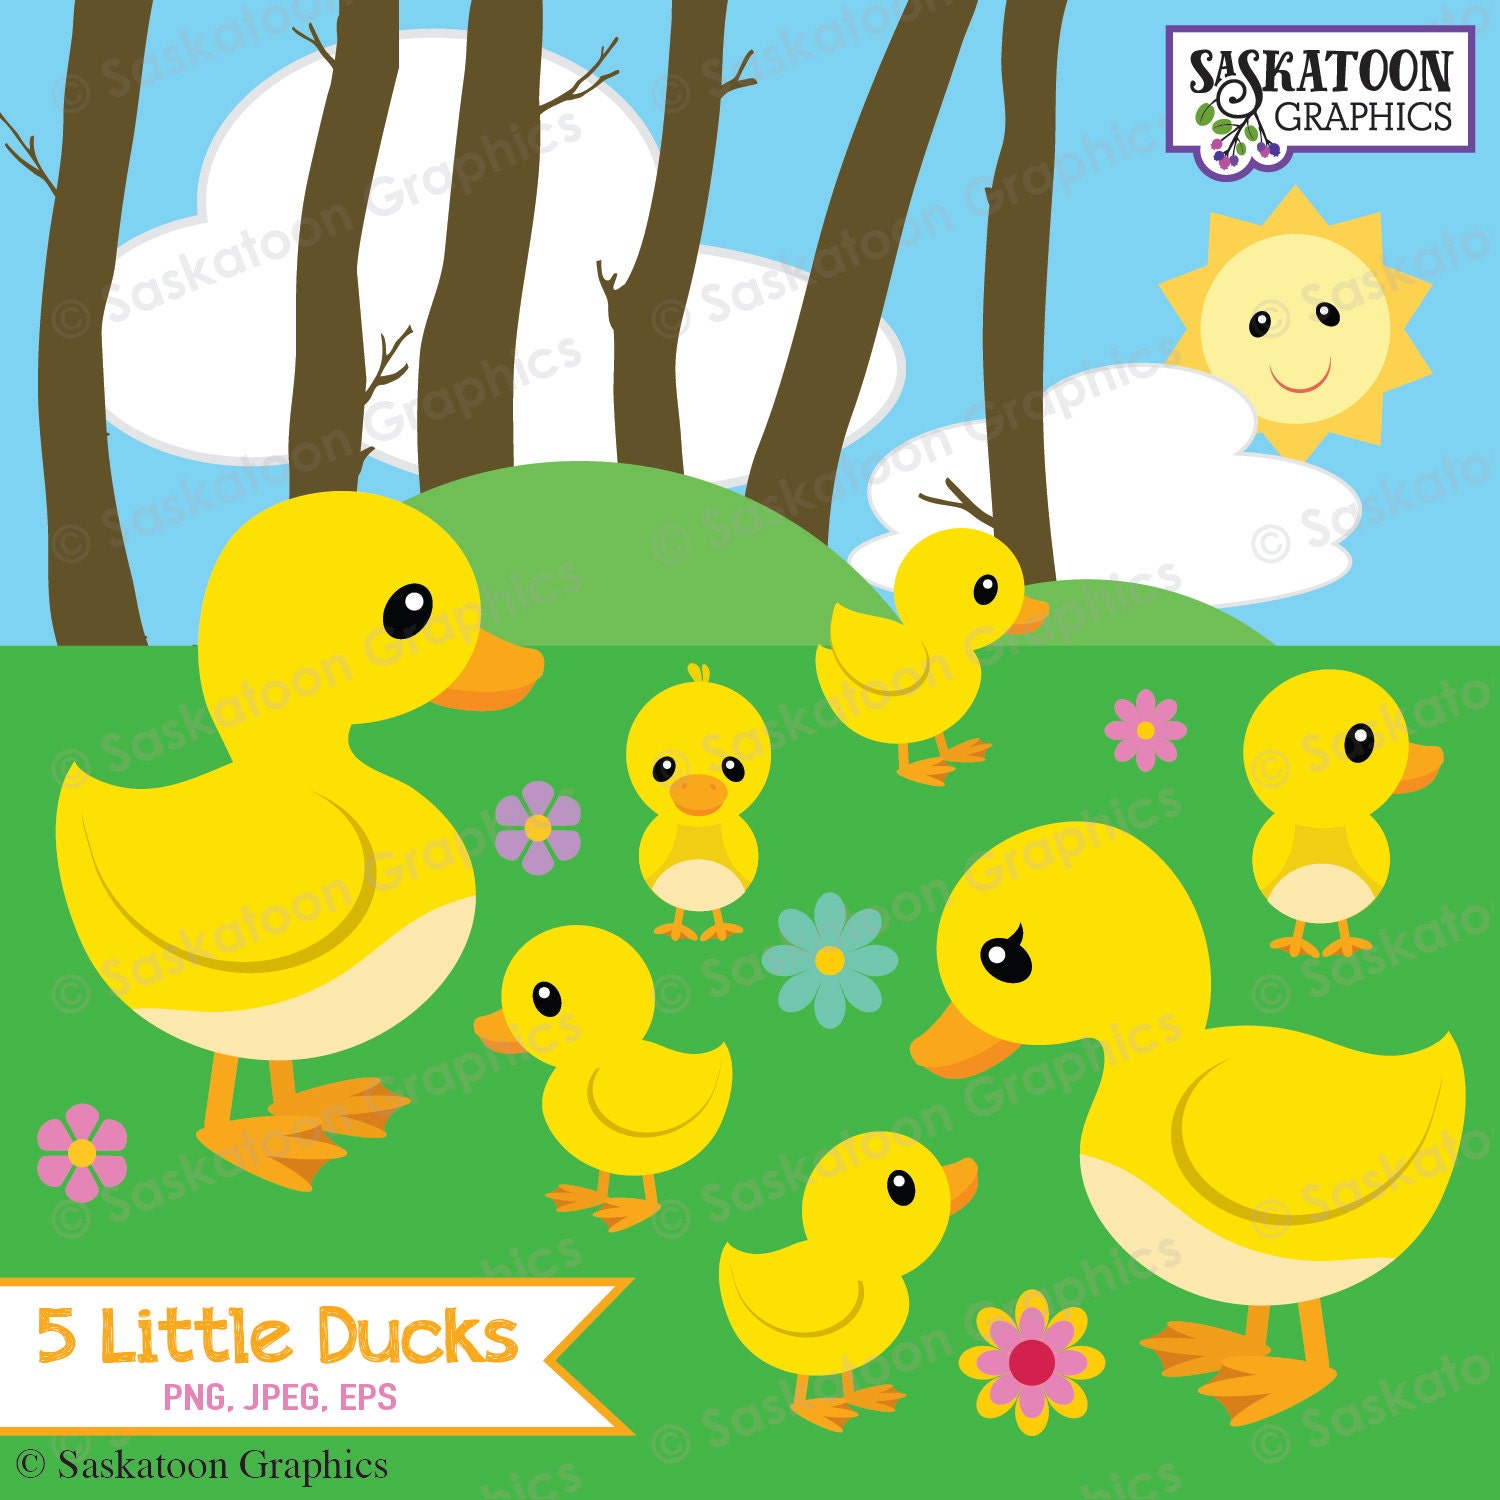 Five Little Ducks Preschool Activity Plan